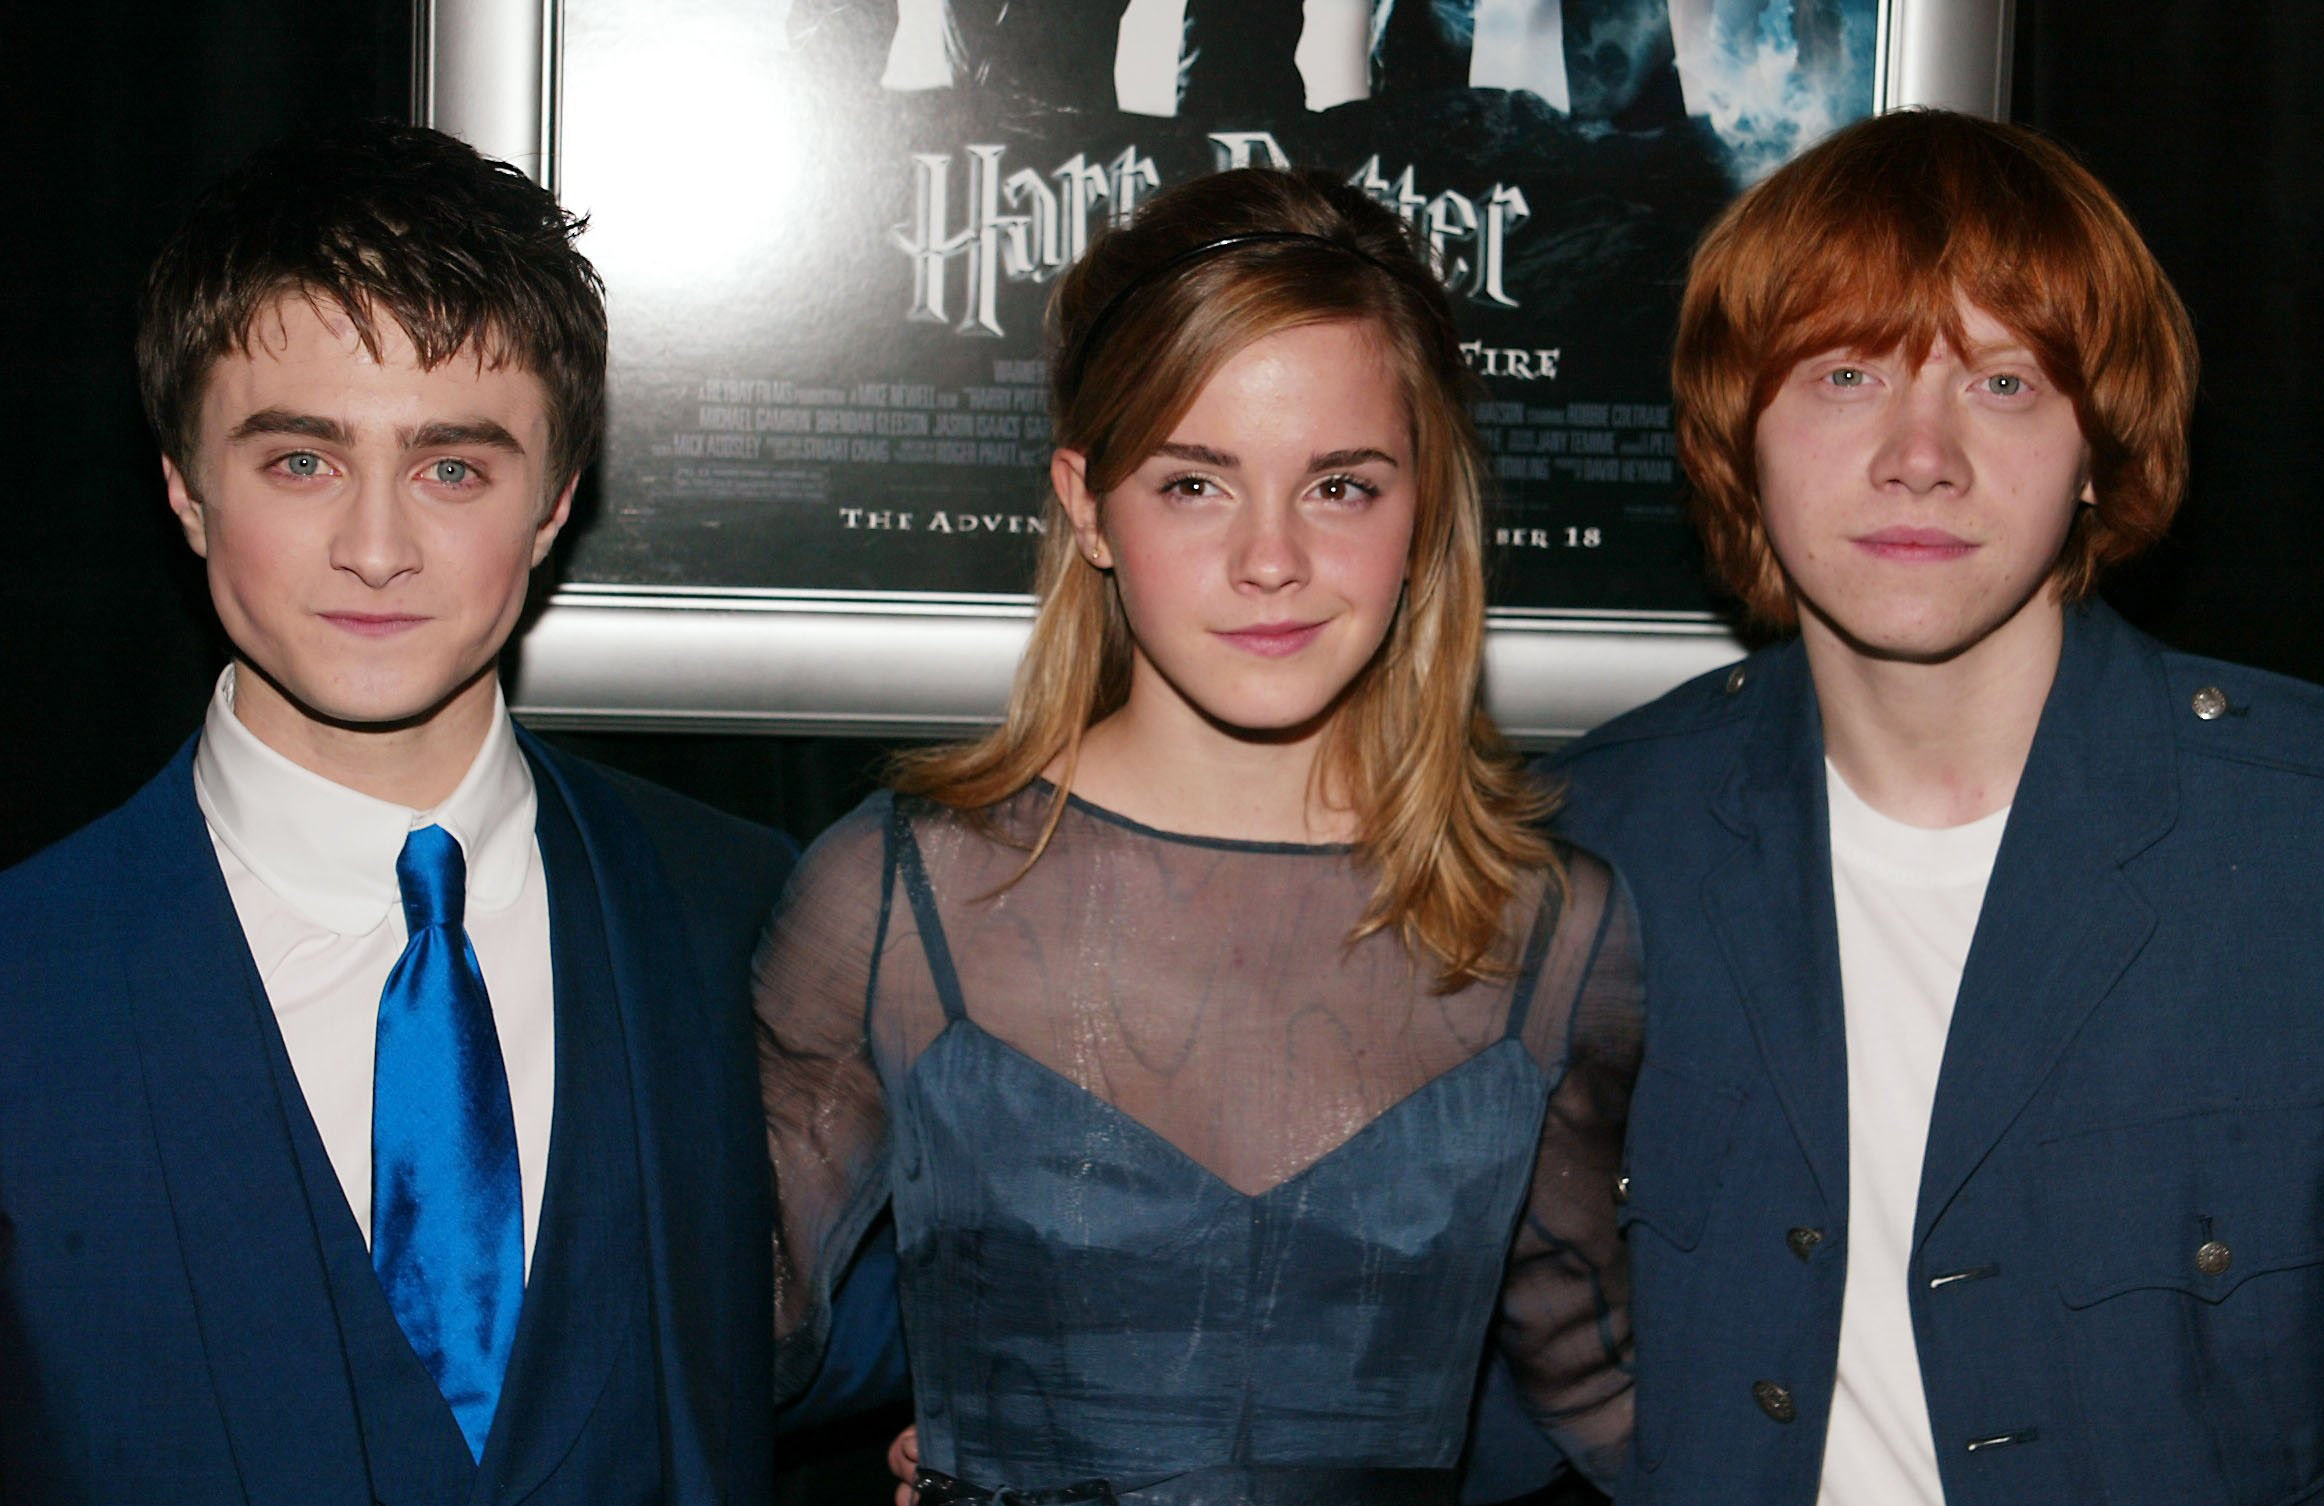 Daniel Radcliffe, Emma Watson und Rupert Grint bei der Premiere von "Harry Potter und der Feuerkelch" in New York City am 12. November 2005 | Quelle: Getty Images